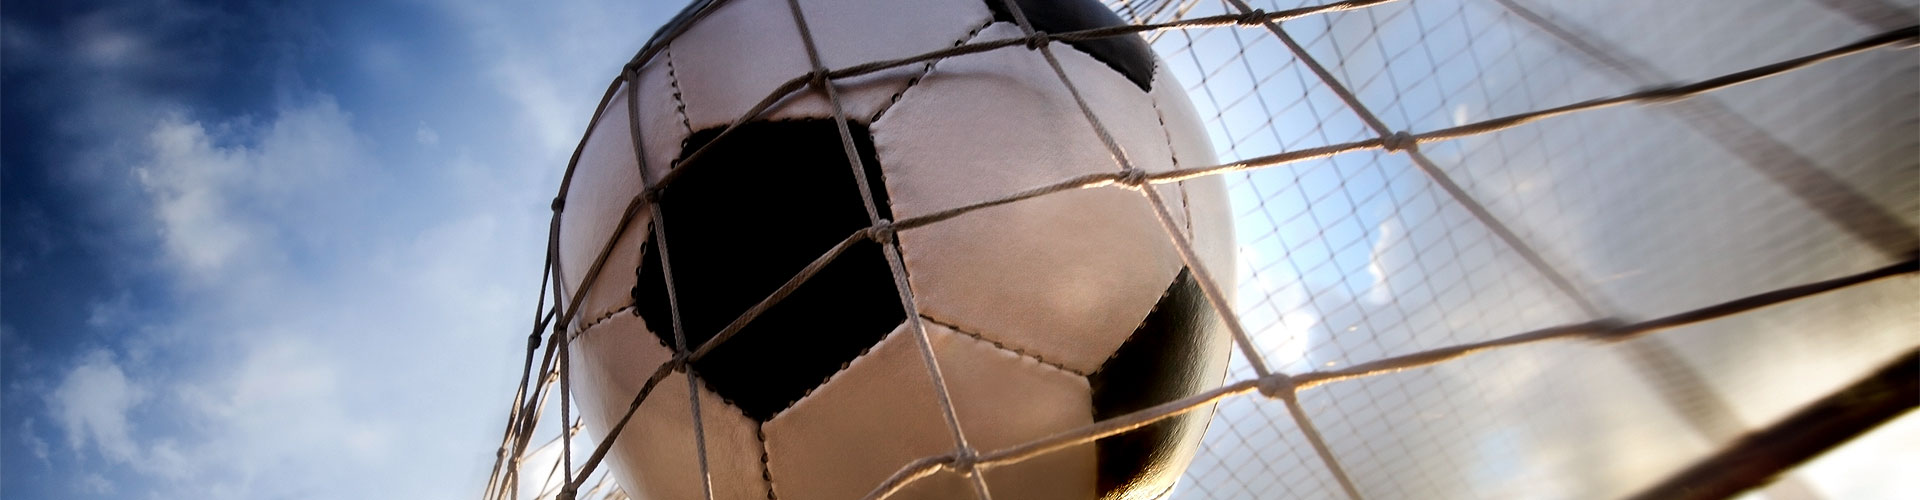 Ver la Eurocopa 2020 de fútbol en vivo en Horna